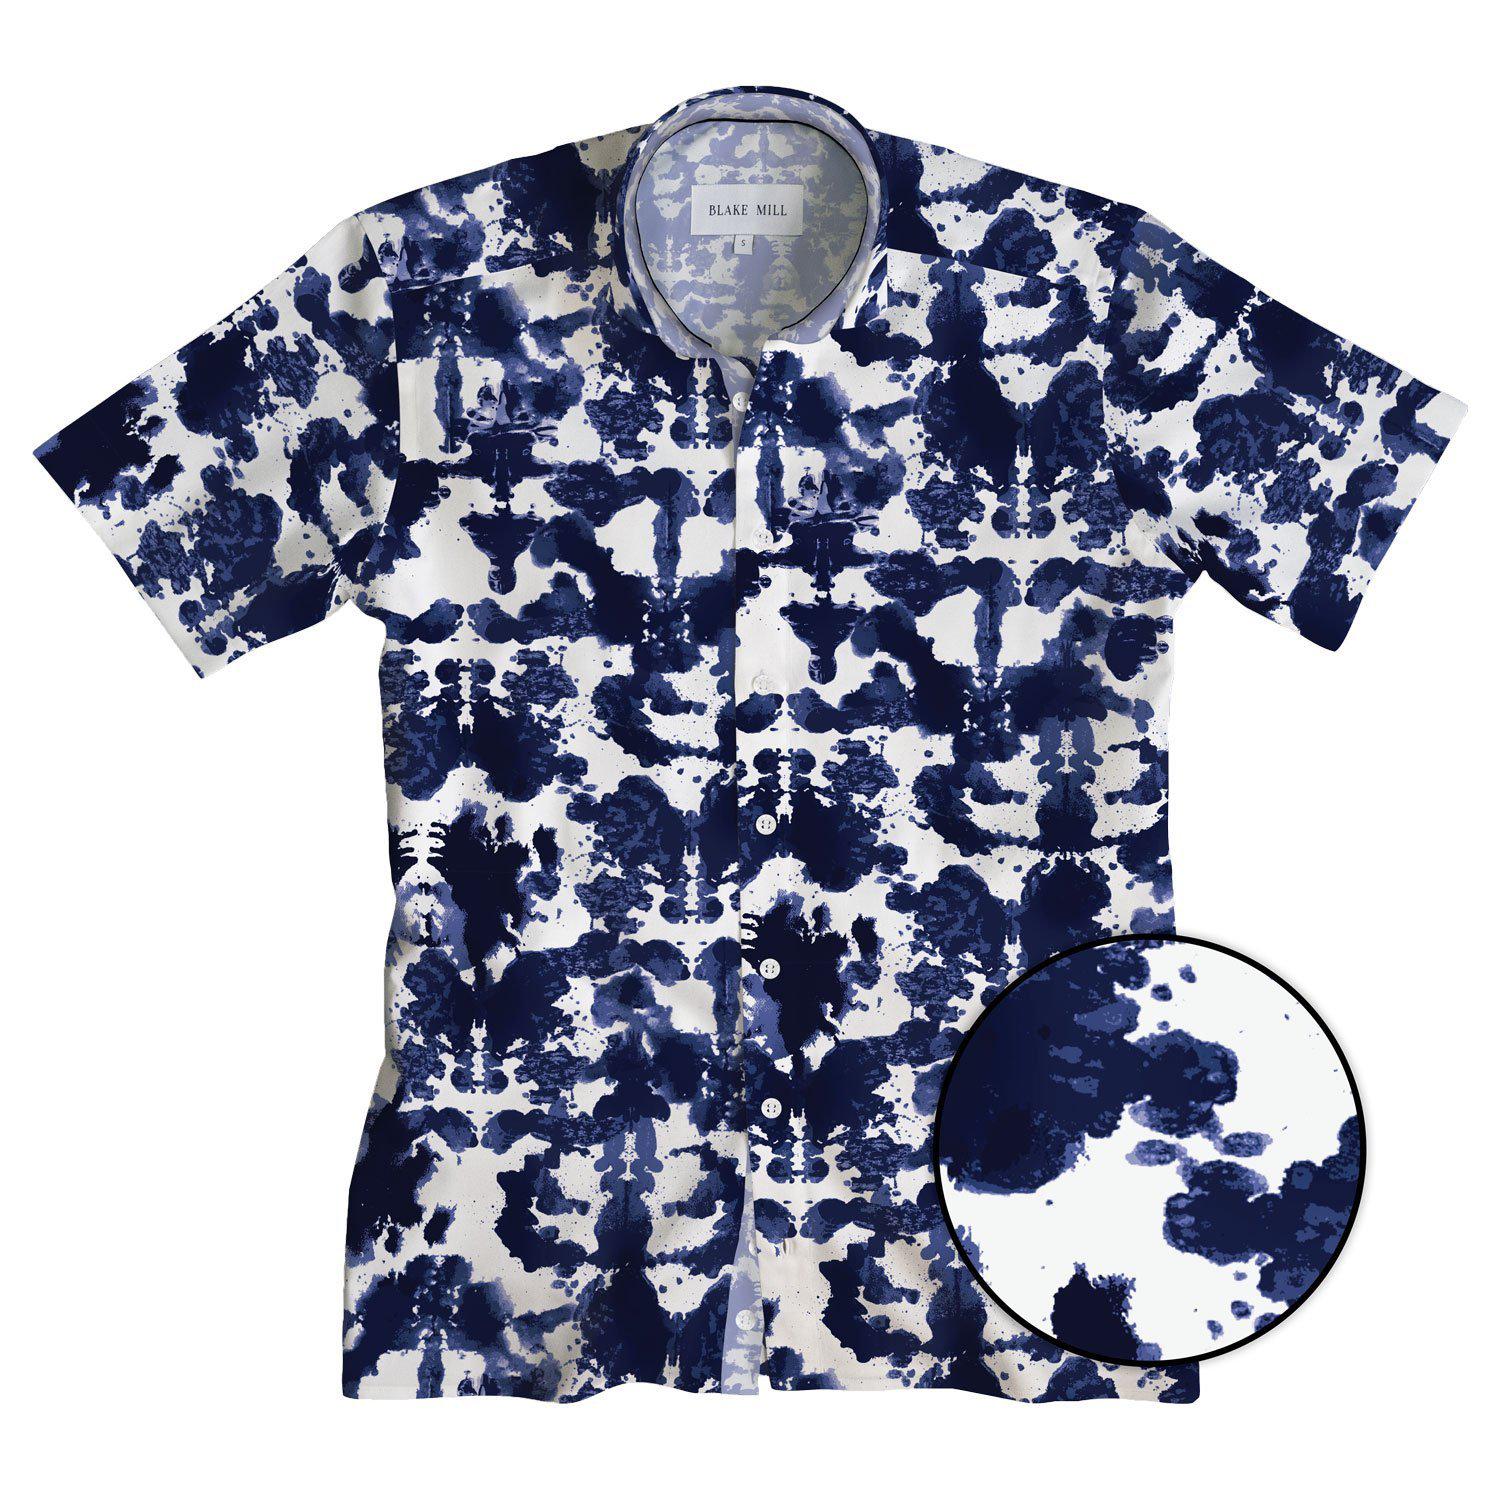 Rorschach Short Sleeve Shirt - Blake Mill